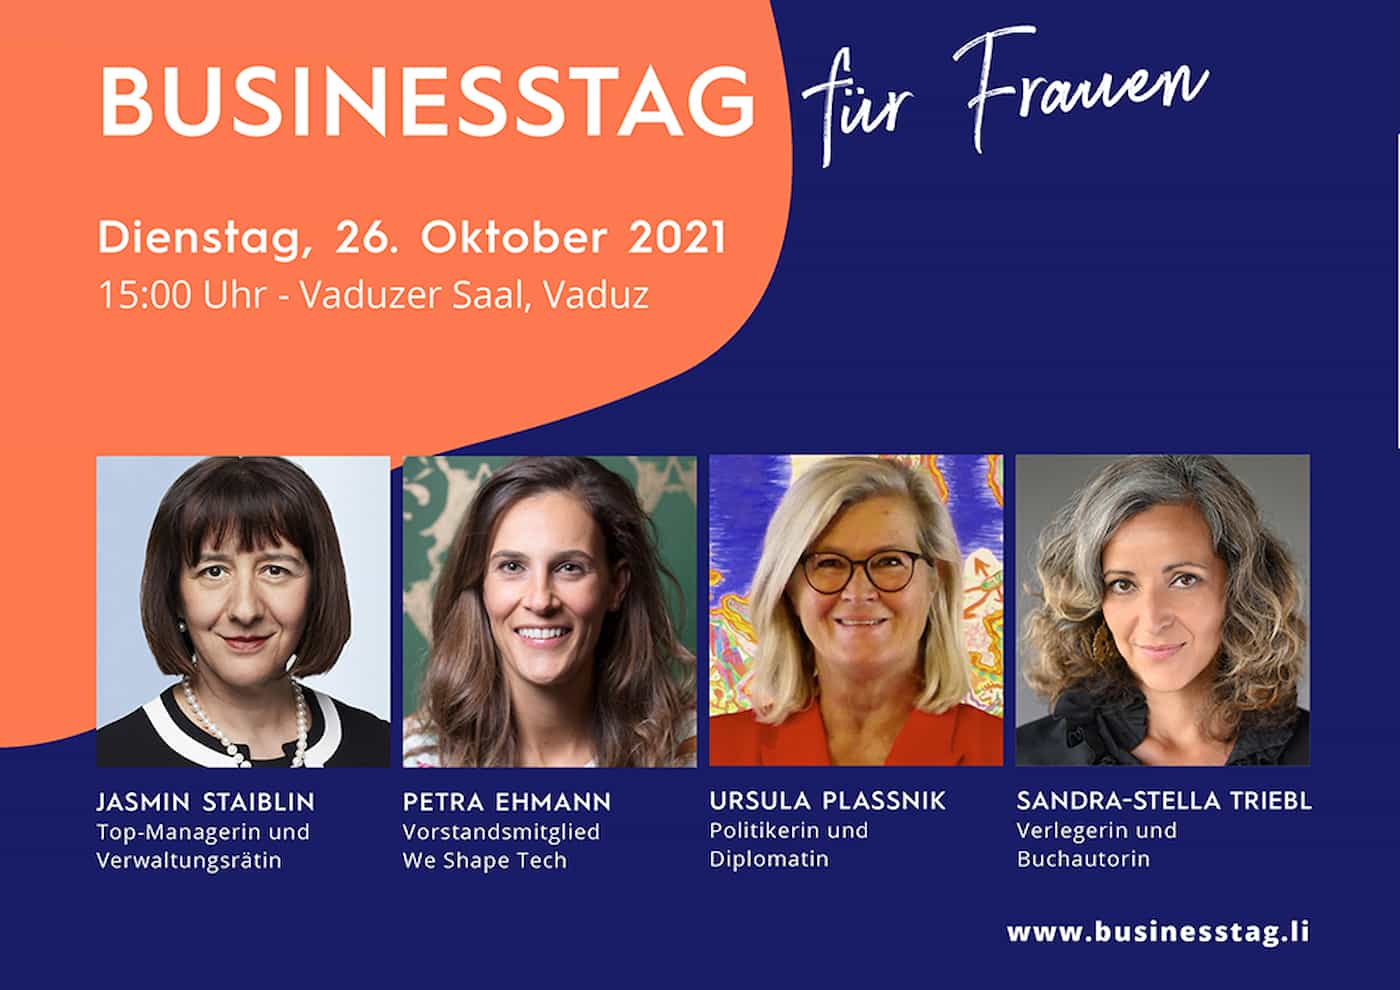 Businesstag für Frauen mit Jasmin Staiblin und Ursula Plassnik